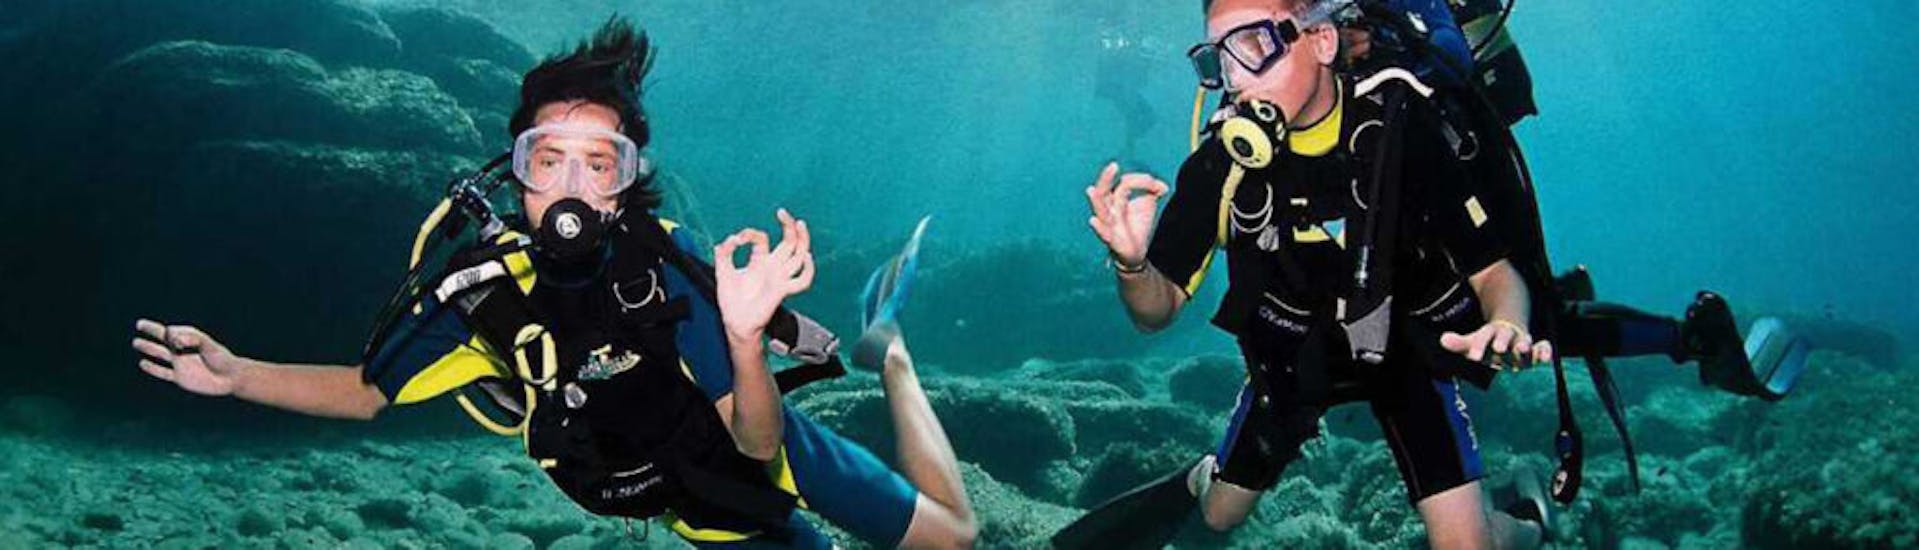 Photo de deux plongeurs faisant du langage des signes sous l'eau pendant la formation de plongée PADI à Ibiza pour les débutants par Arenal Diving & Boat Trips Ibiza.